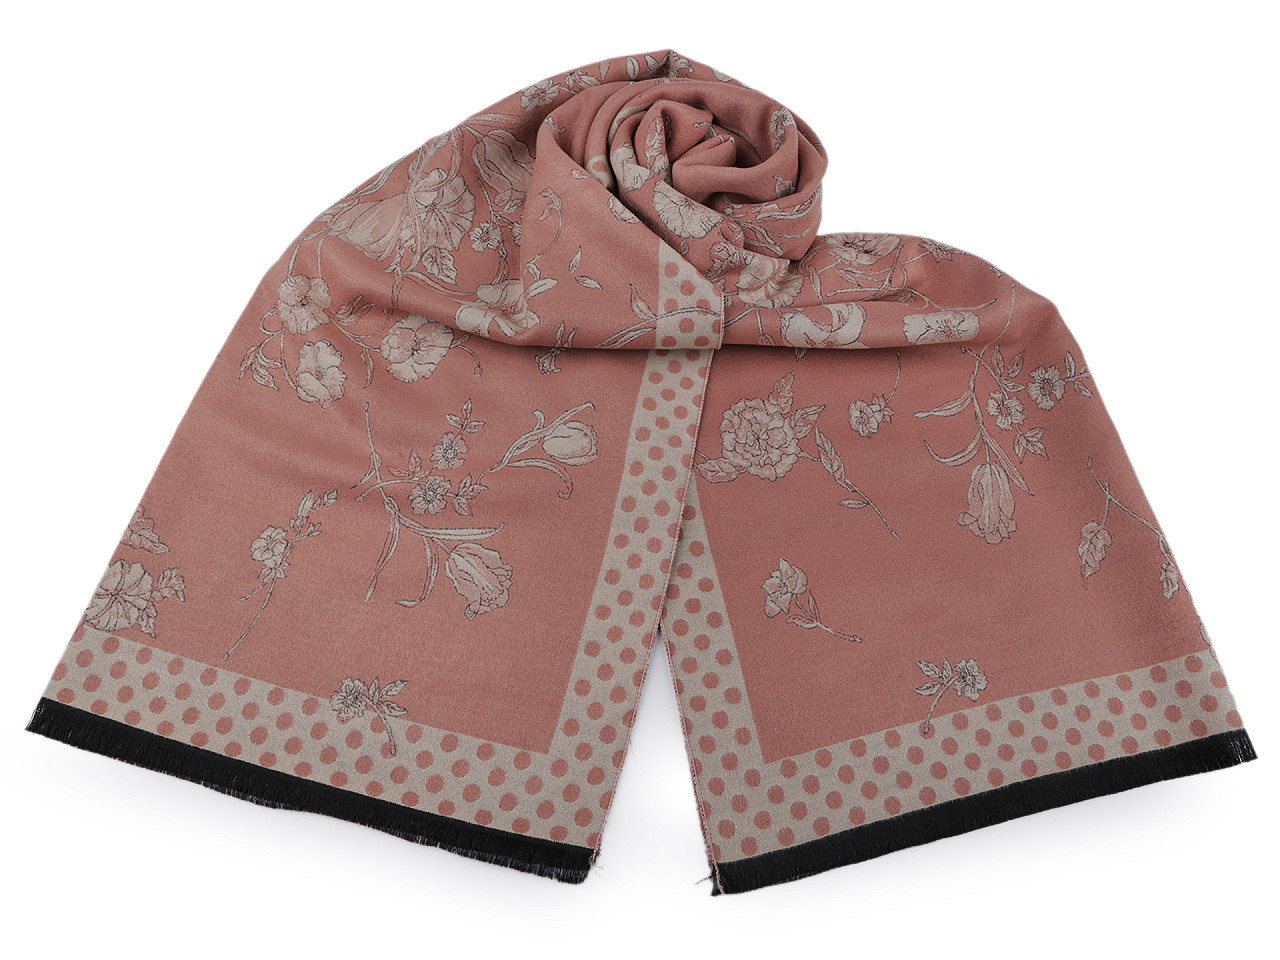 Šátek / šála s květy typu pashmina 65x185 cm, barva 1 pudrová